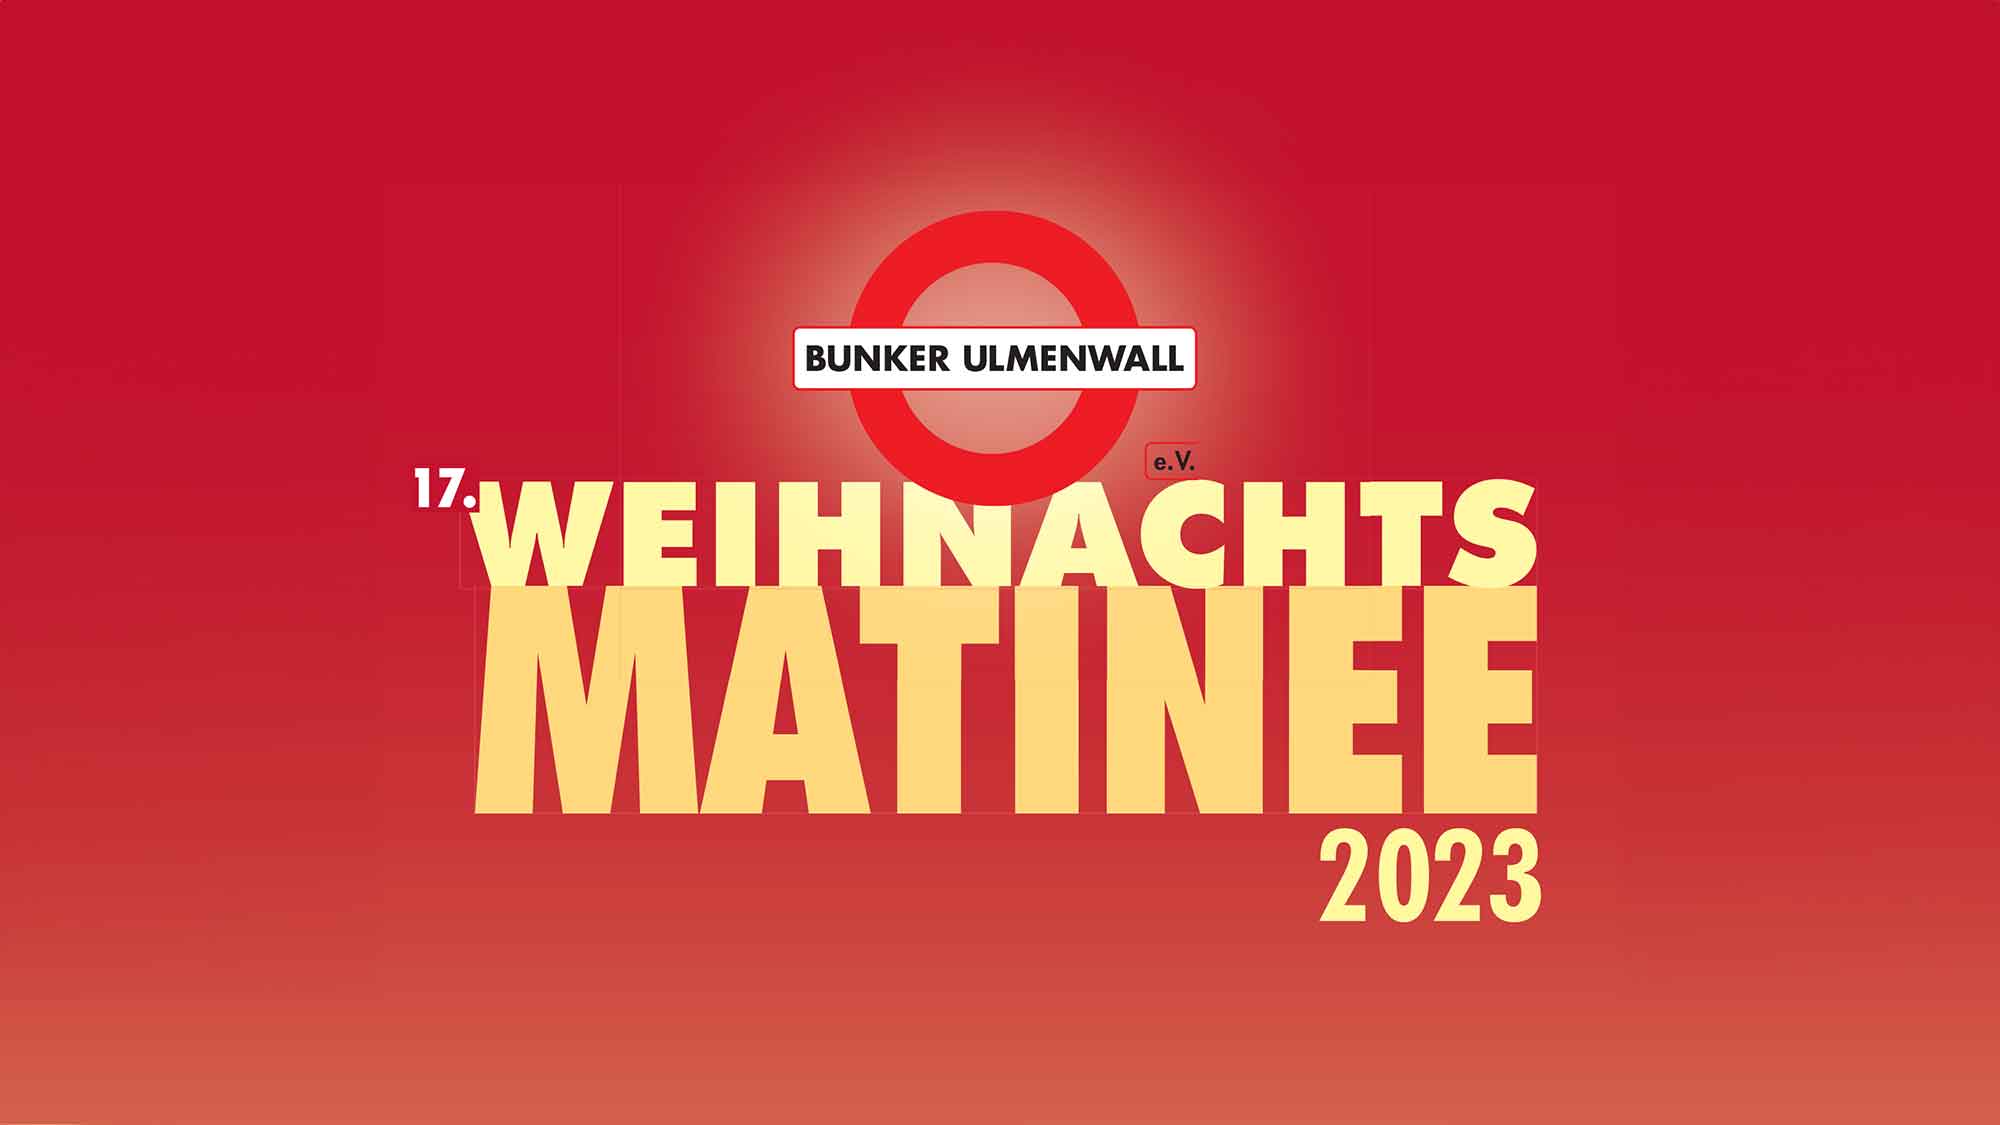 Bunker Ulmenwall Bielefeld, 17. Weihnachtsmatinee in der Rudolf Oetker Halle, 26. November 2023